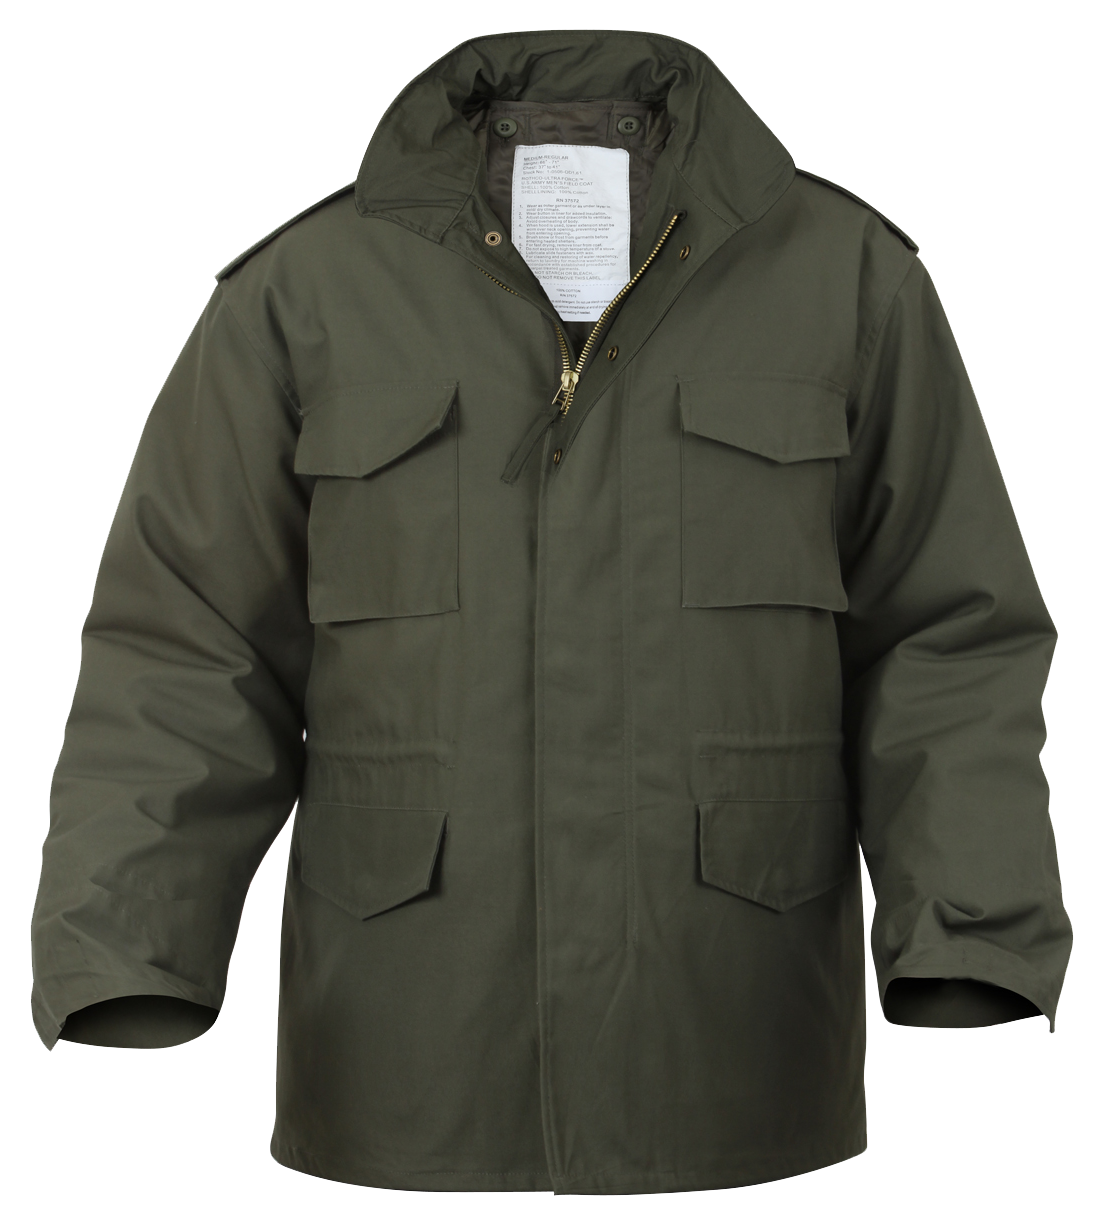 Rothco M65 Field Jacket Olive Drab (M65R)